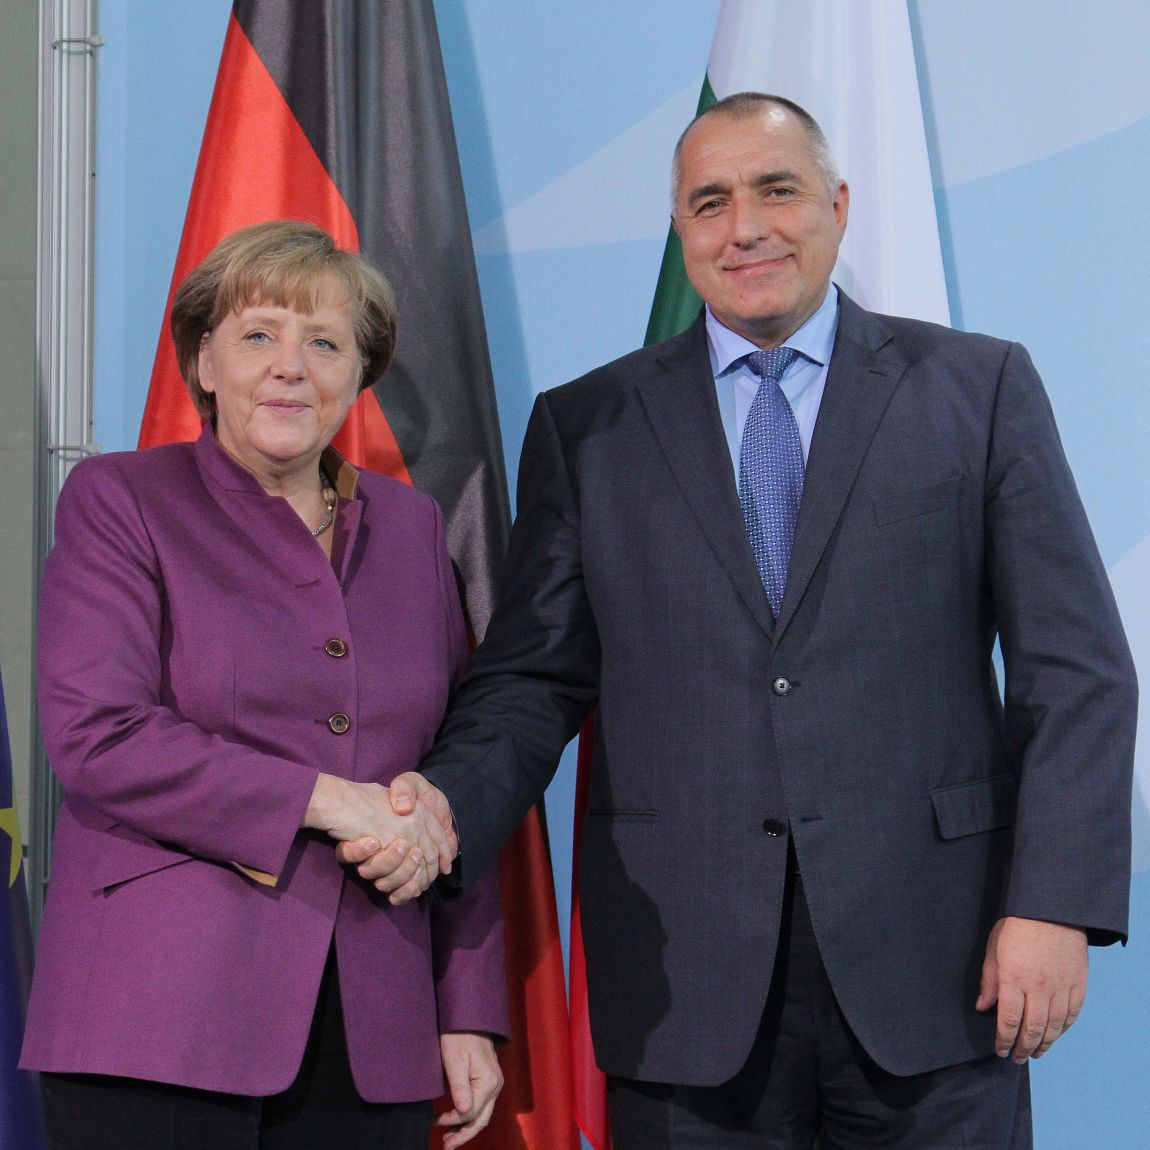 Бойко Борисов неведнъж е казвал, че високо цени мнението на Меркел